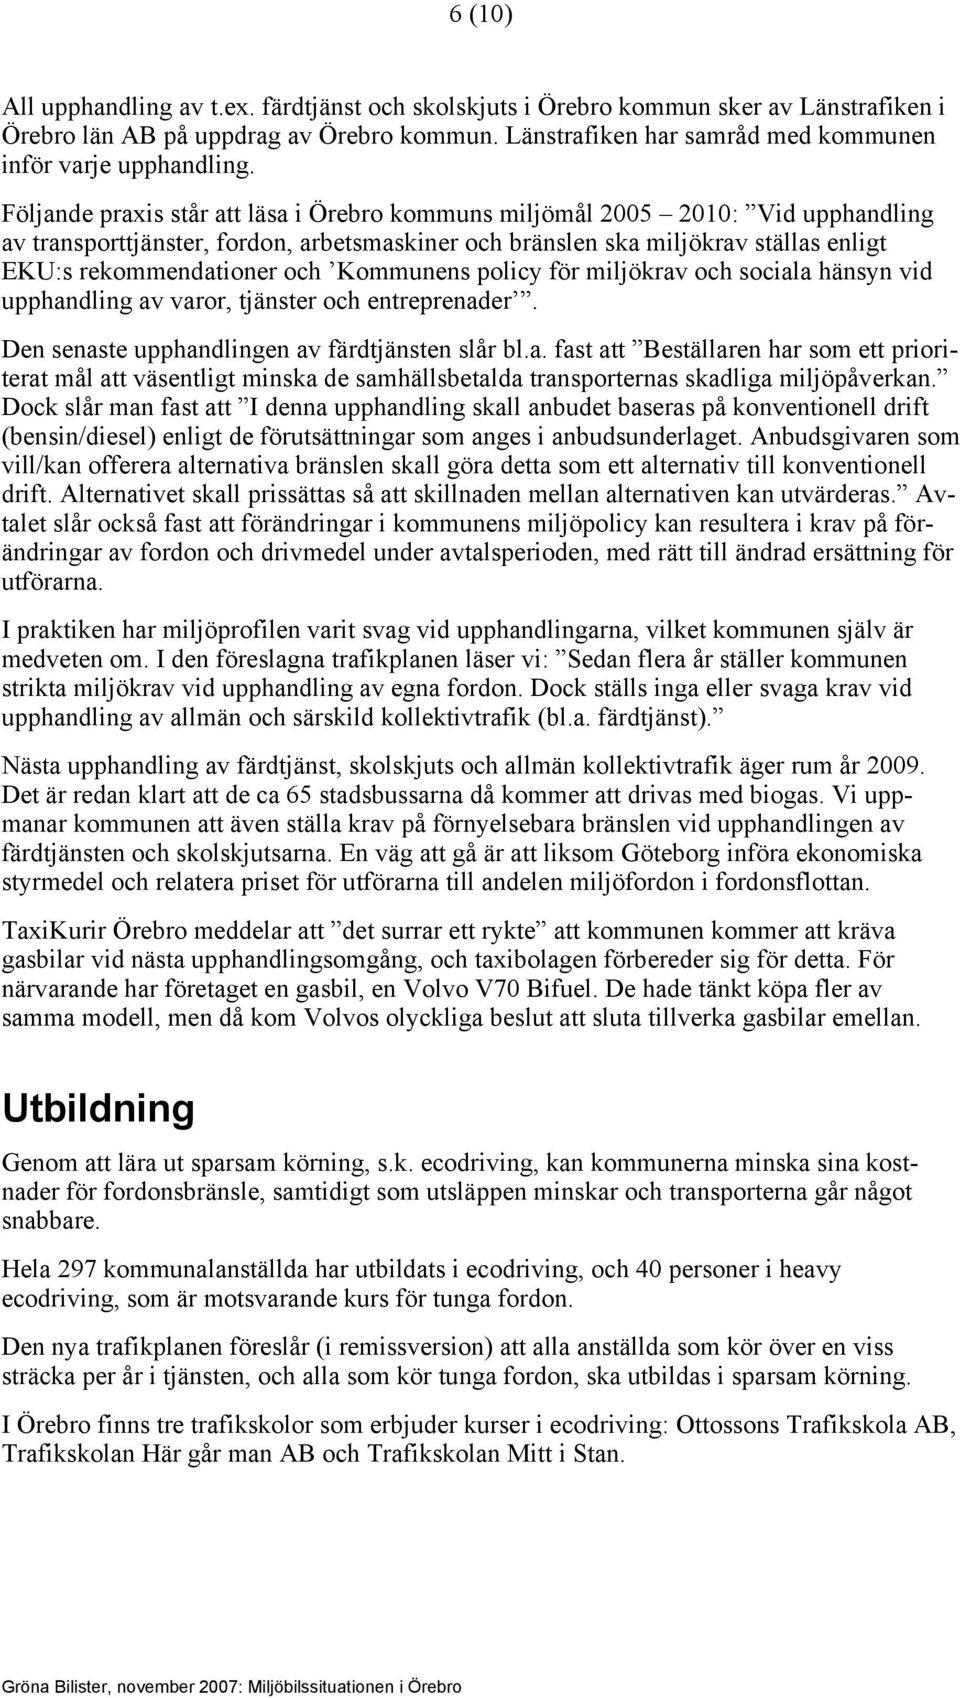 Följande praxis står att läsa i Örebro kommuns miljömål 2005 2010: Vid upphandling av transporttjänster, fordon, arbetsmaskiner och bränslen ska miljökrav ställas enligt EKU:s rekommendationer och